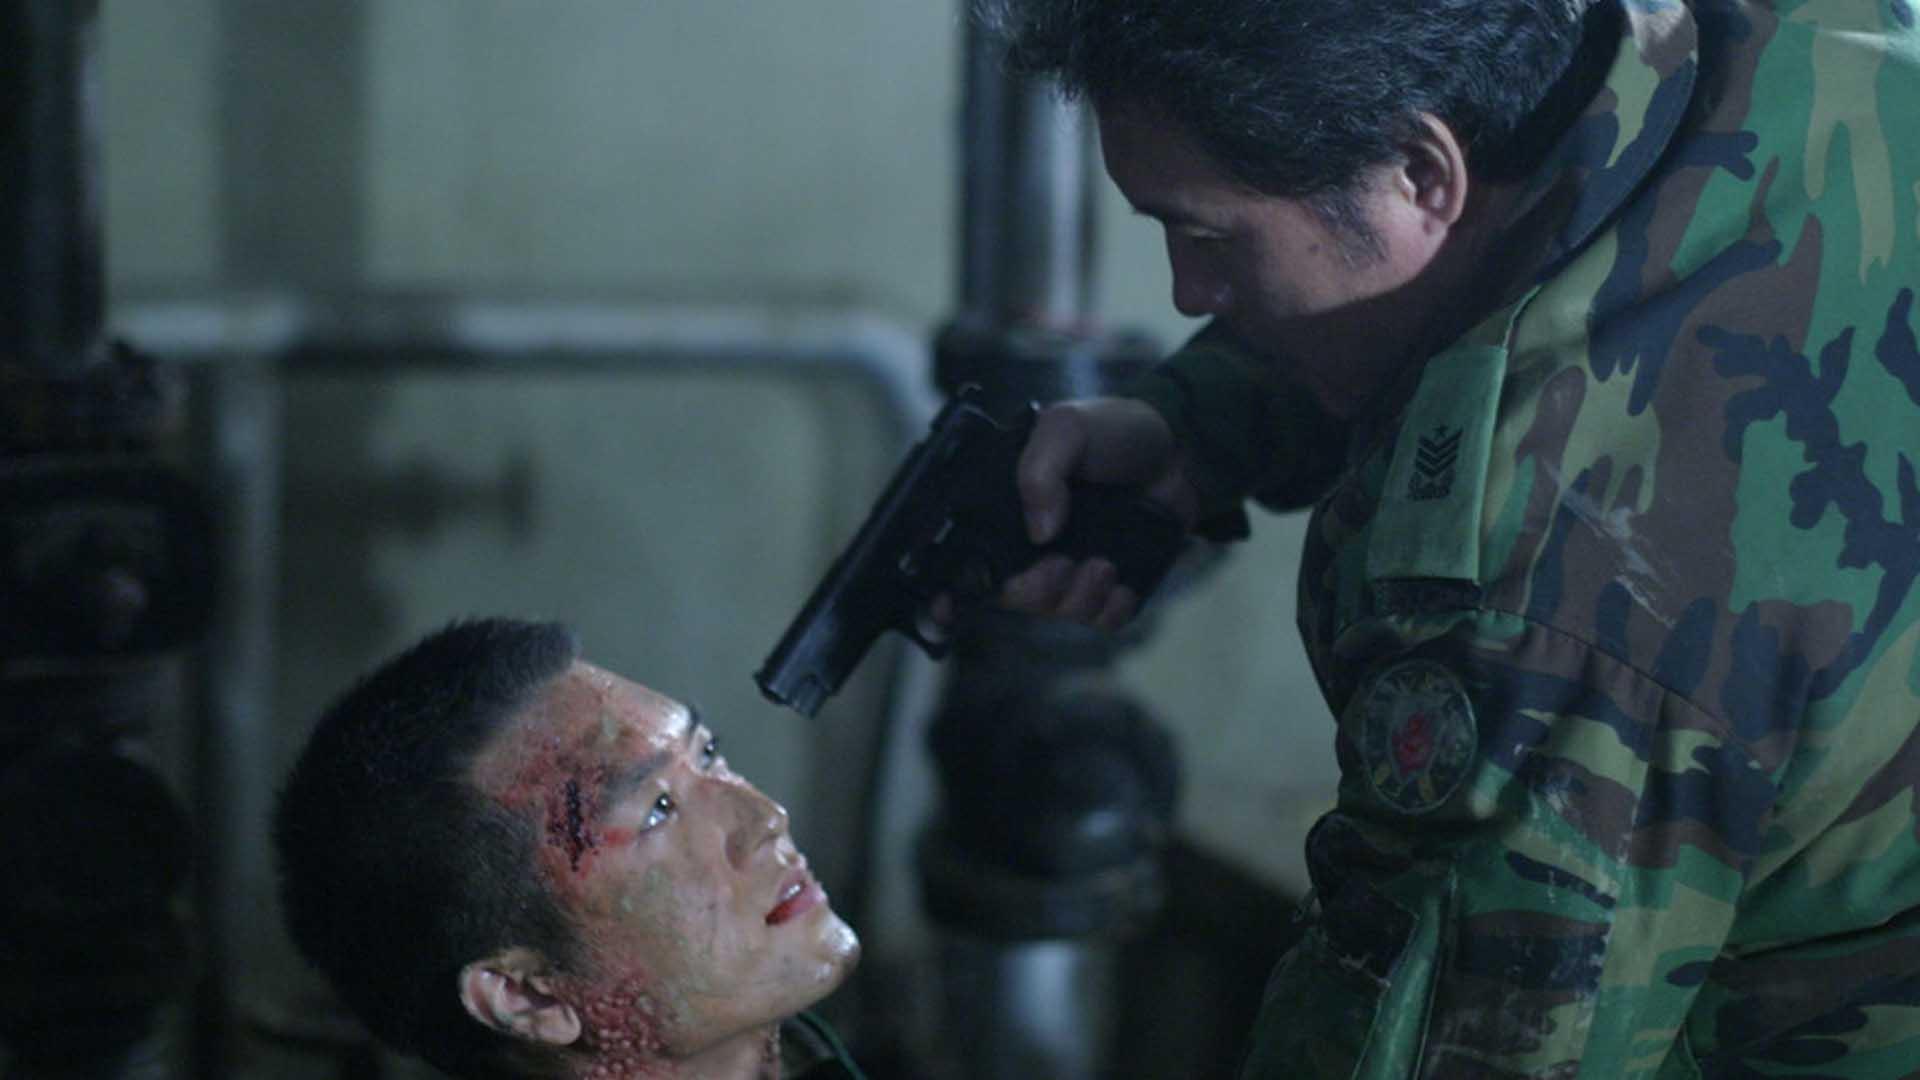 سرهنگی در فیلم The Guard Post روی سرباز مریضی اسلحه گرفته است